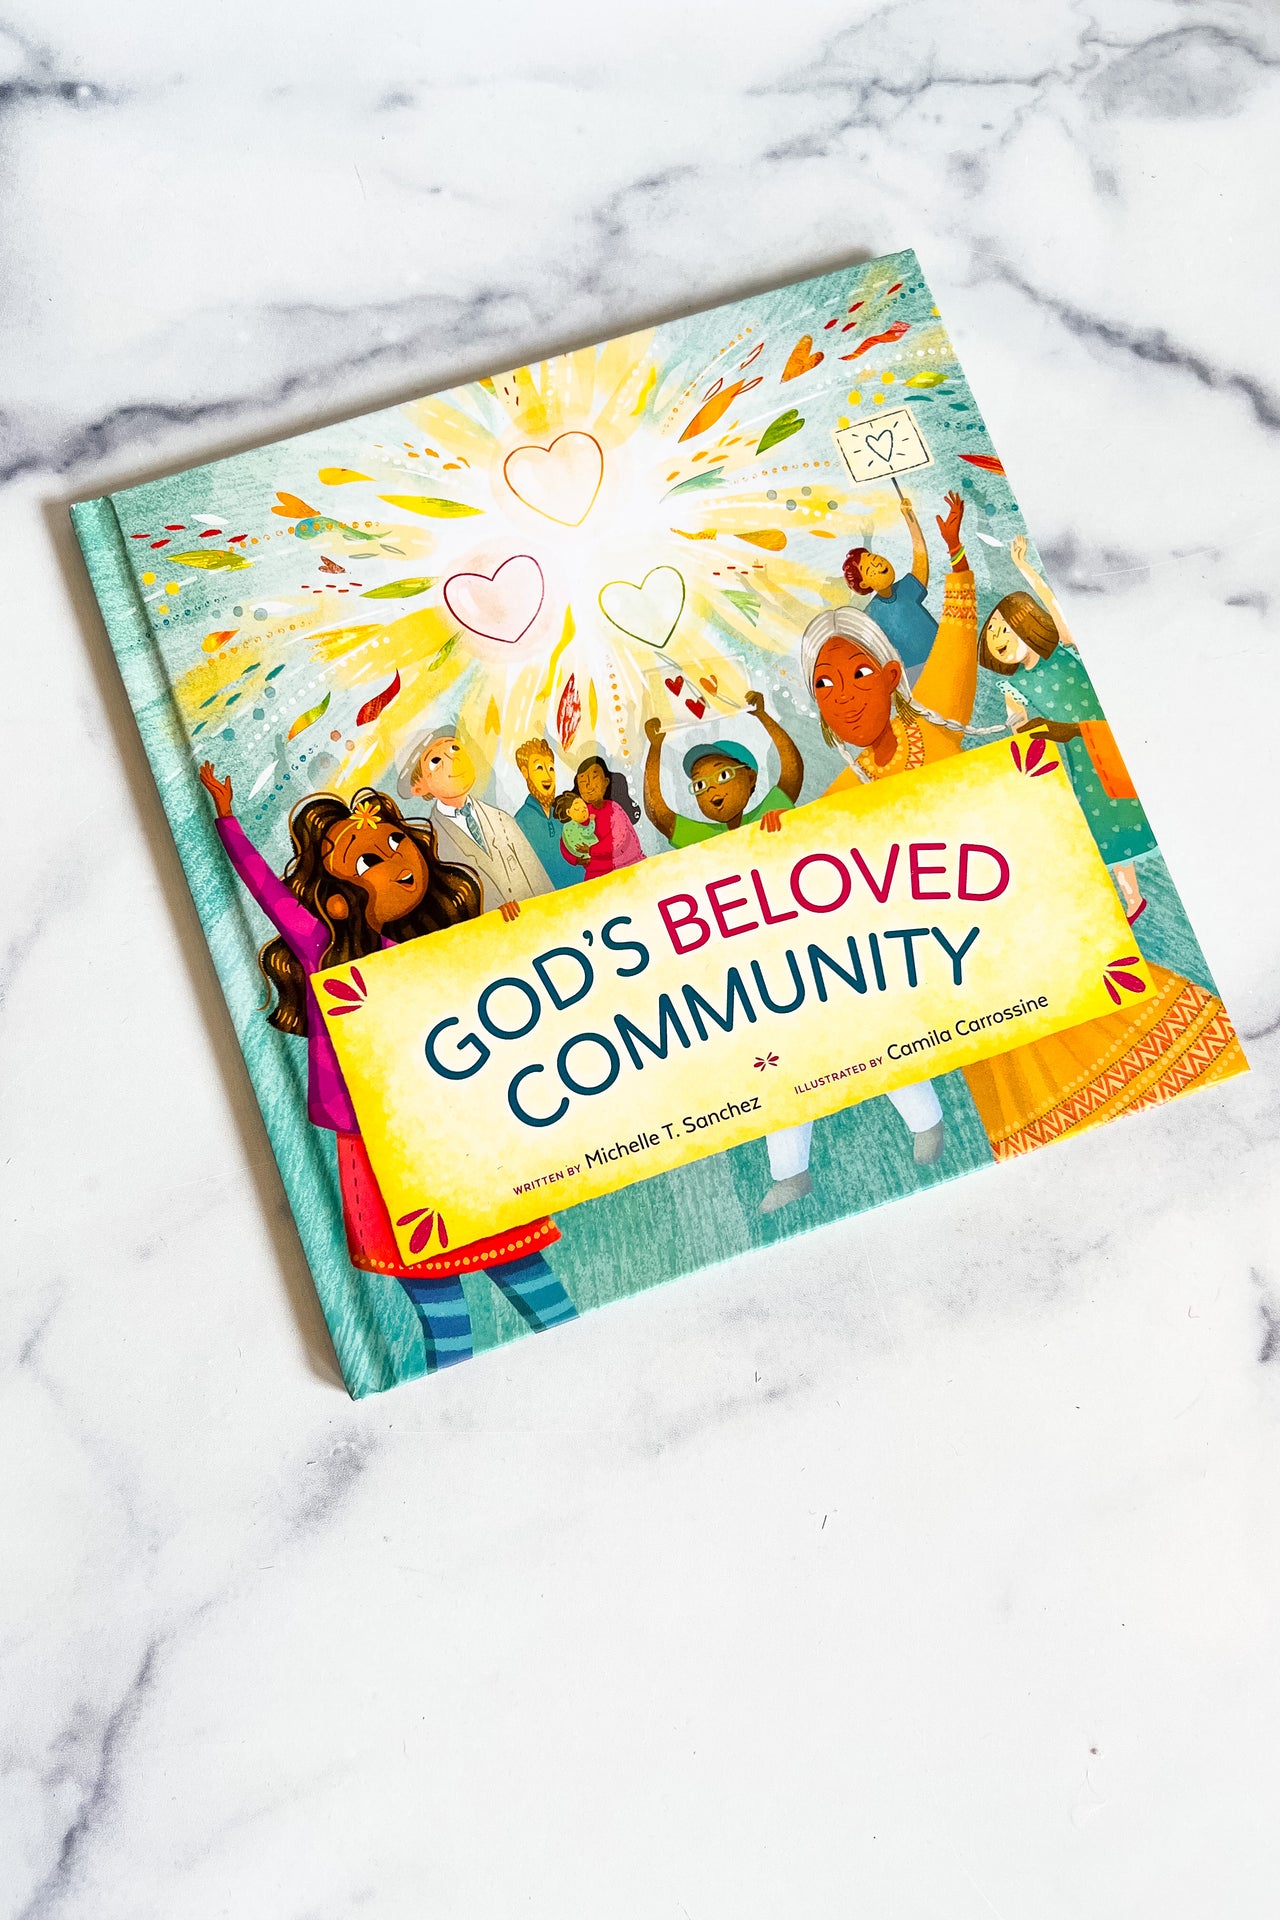 God's Beloved Community